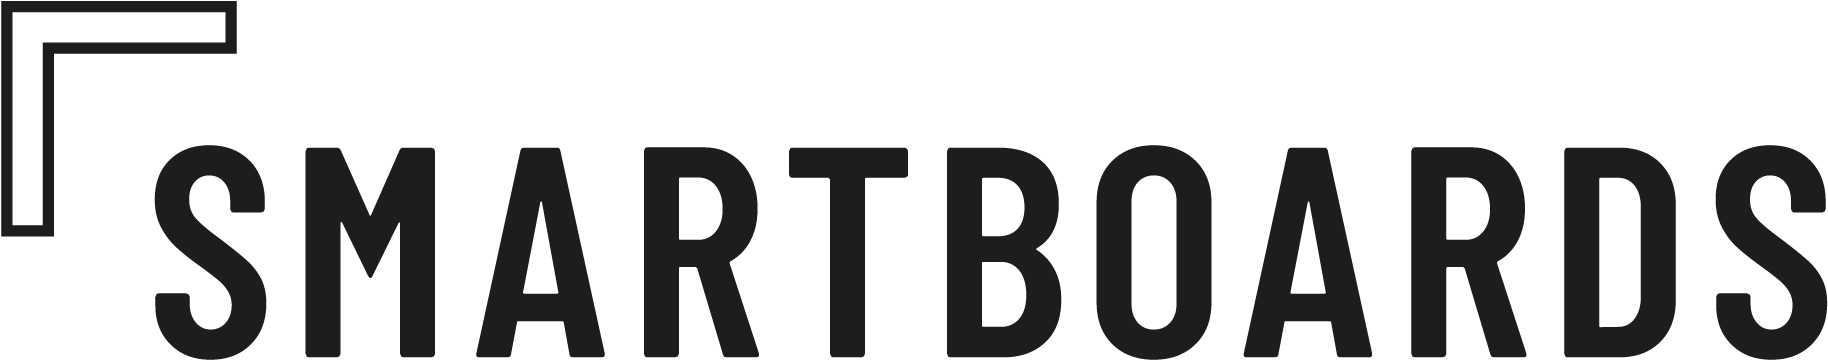 Smartboards Logo Design PNG